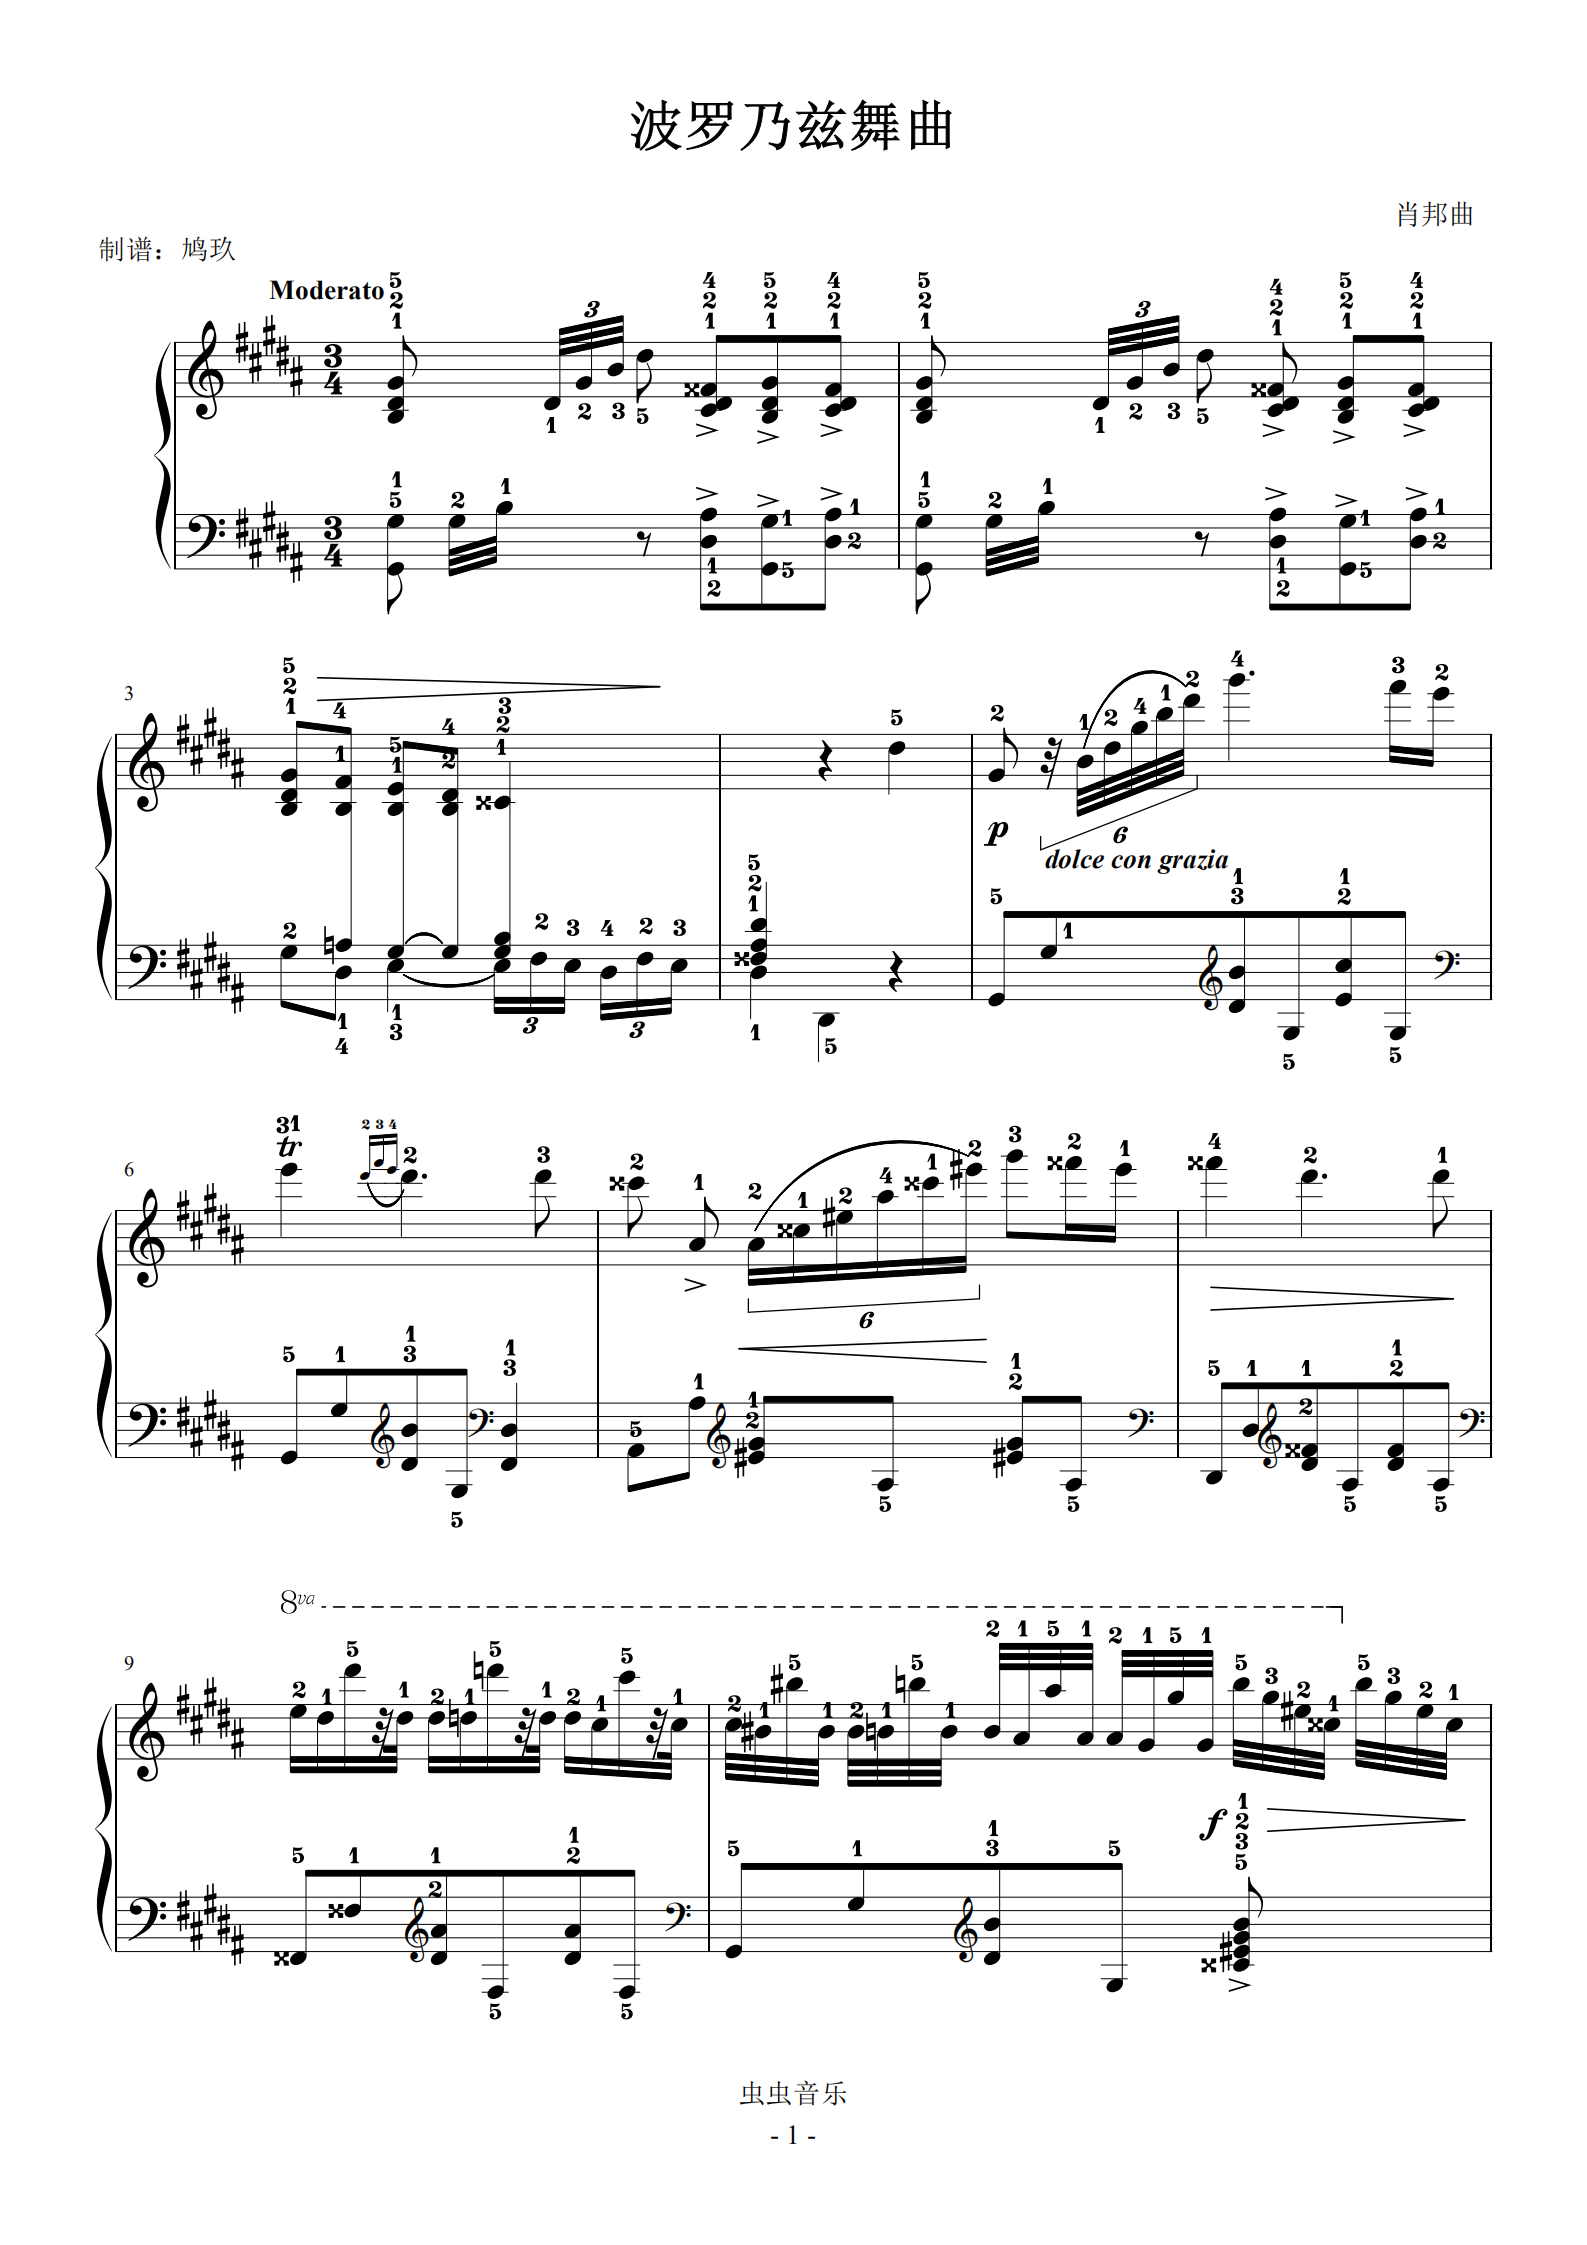 波罗乃兹舞曲(上音十级),波罗乃兹舞曲(上音十级)钢琴谱,波罗乃兹舞曲